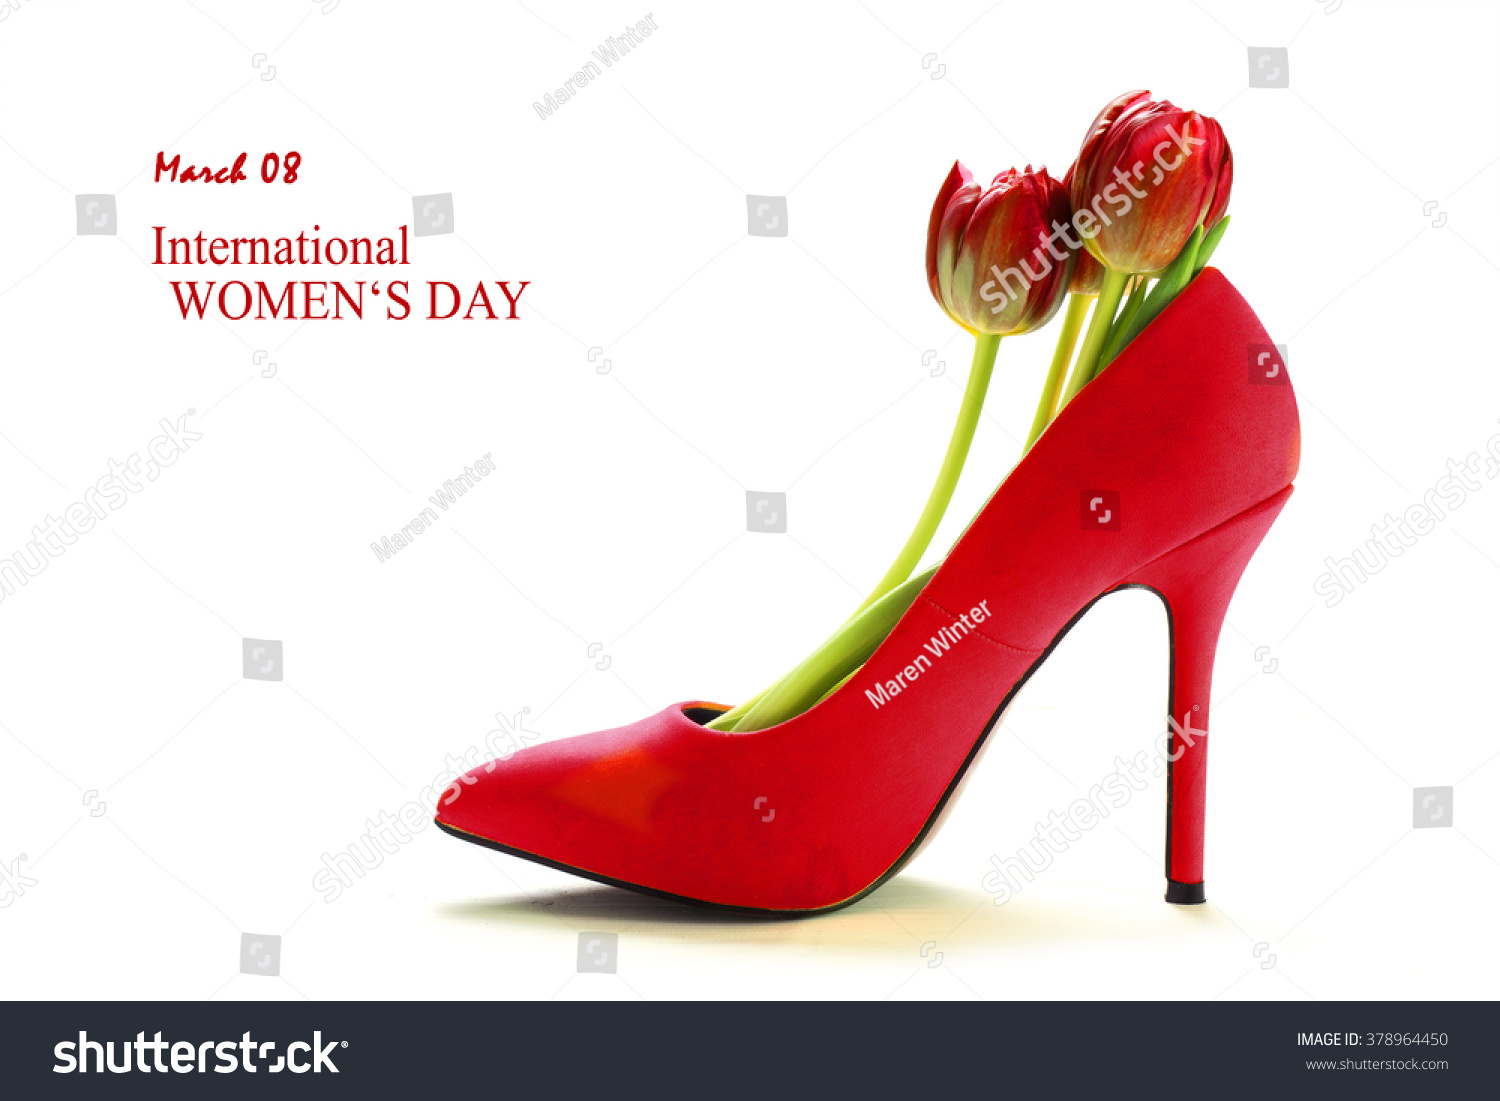 women's red high heel shoes